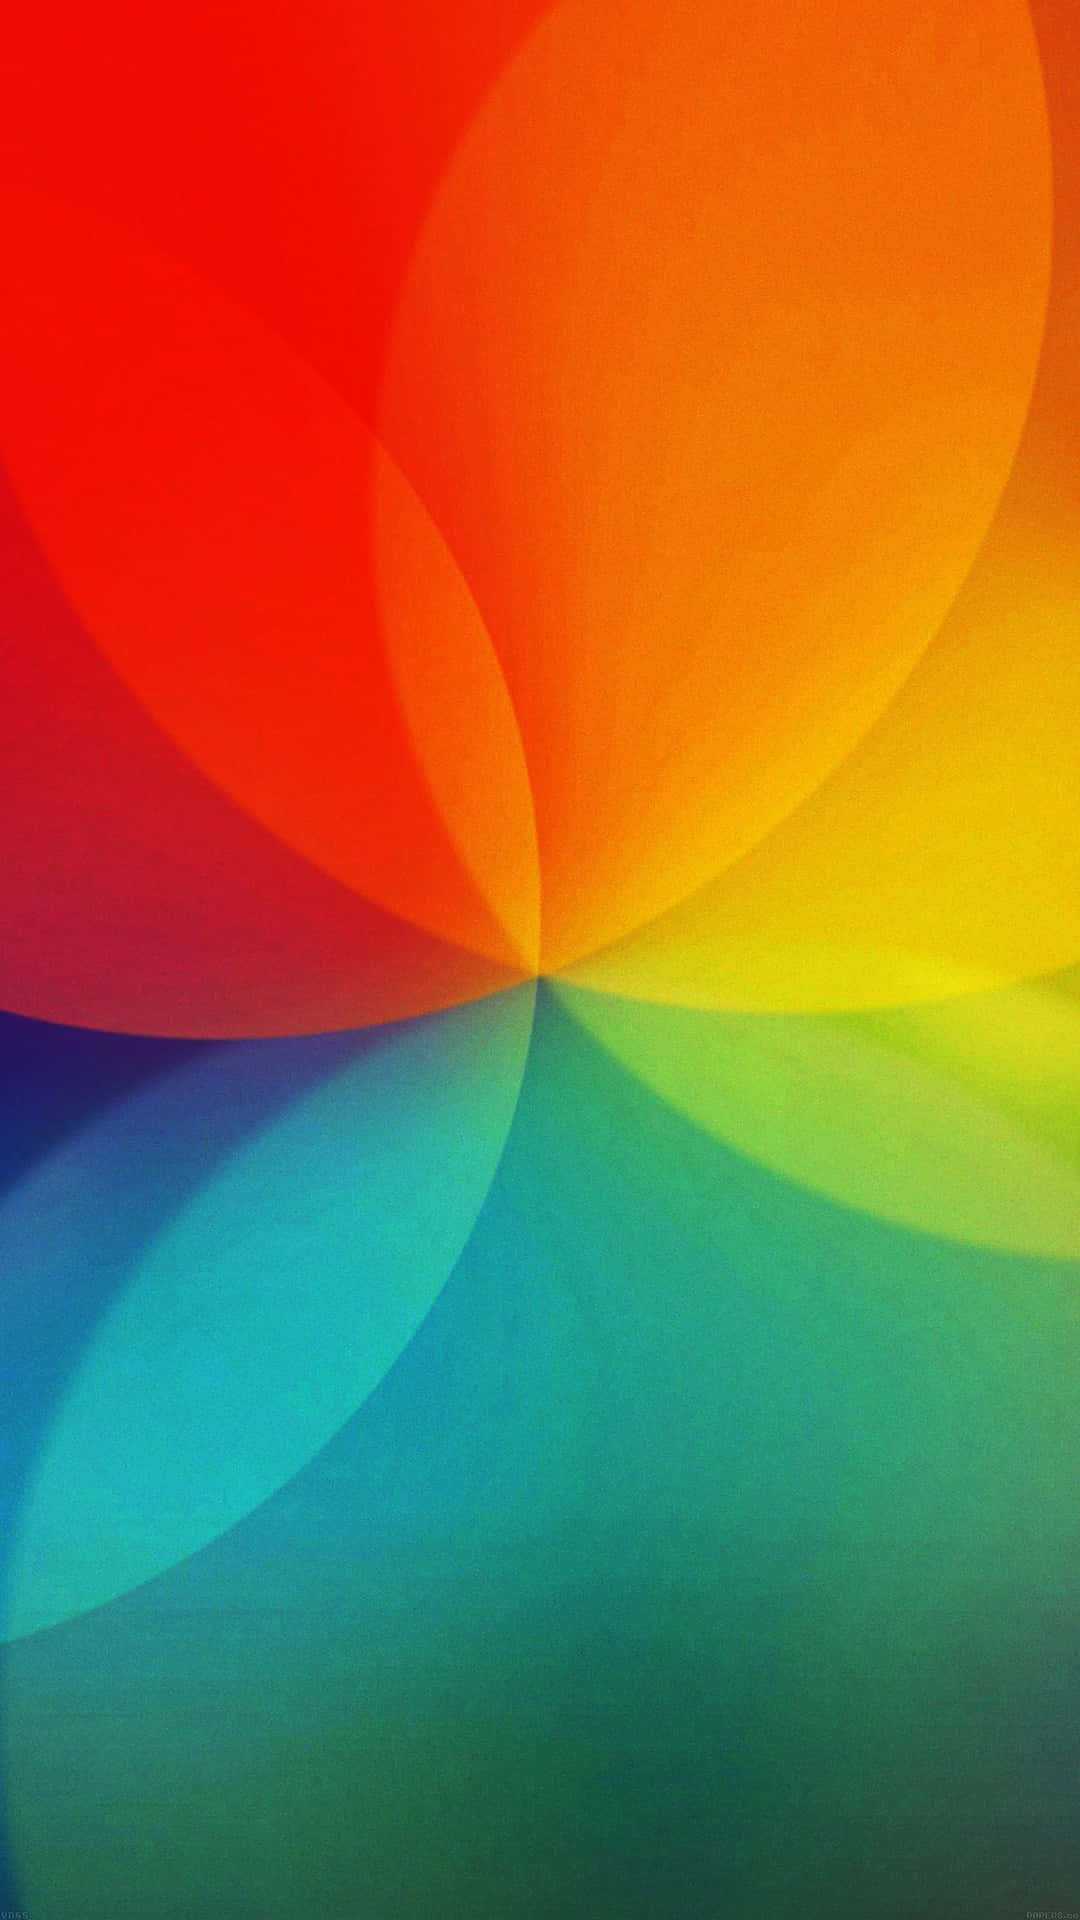 LG G4 Merging Rainbow Lights Wallpaper